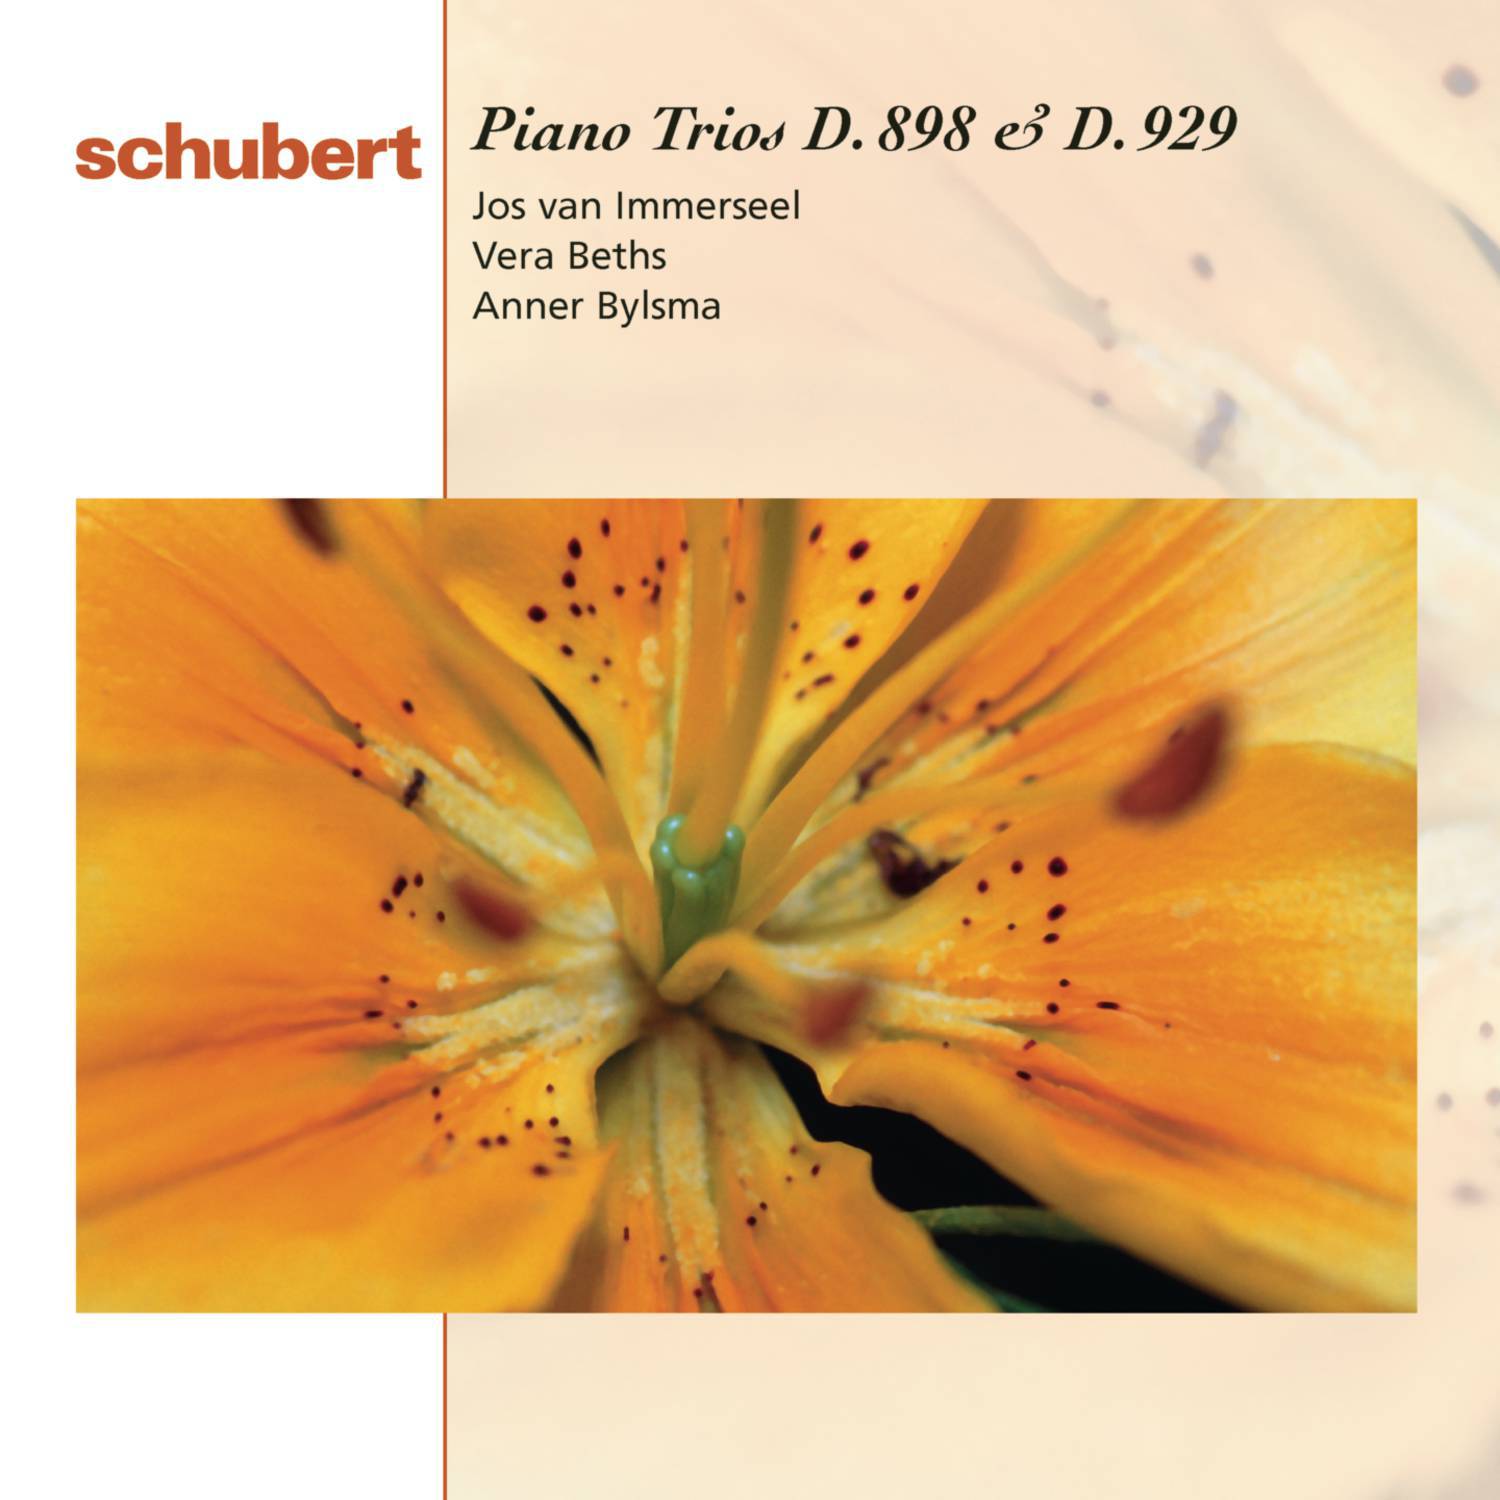 Piano Trio No. 1 in B-Flat Major, D. 898, Op. 99: II. Andante un poco mosso